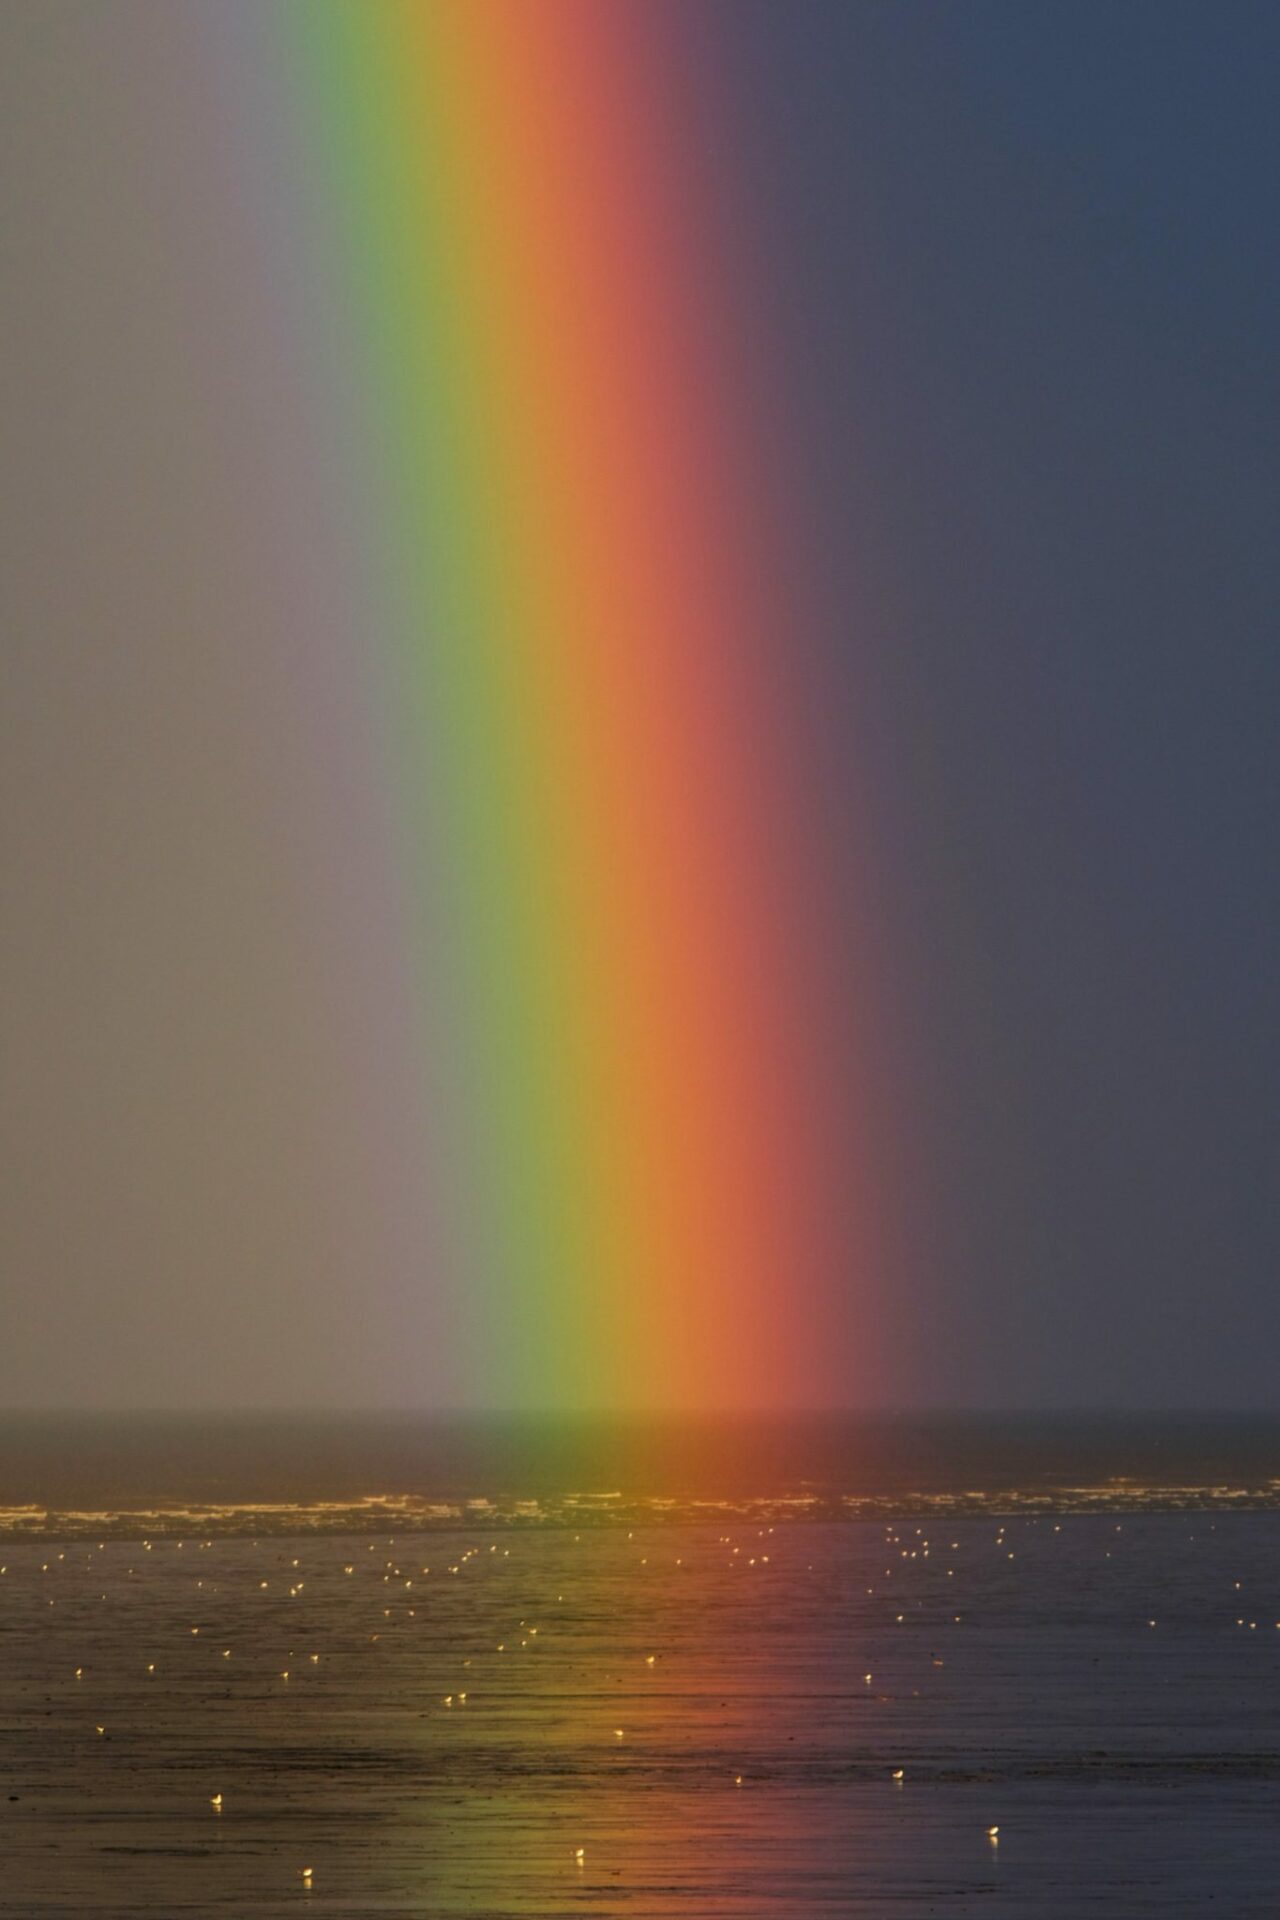 Valloloko Regenbogen Foto von Zoltan Tasi auf Unsplash